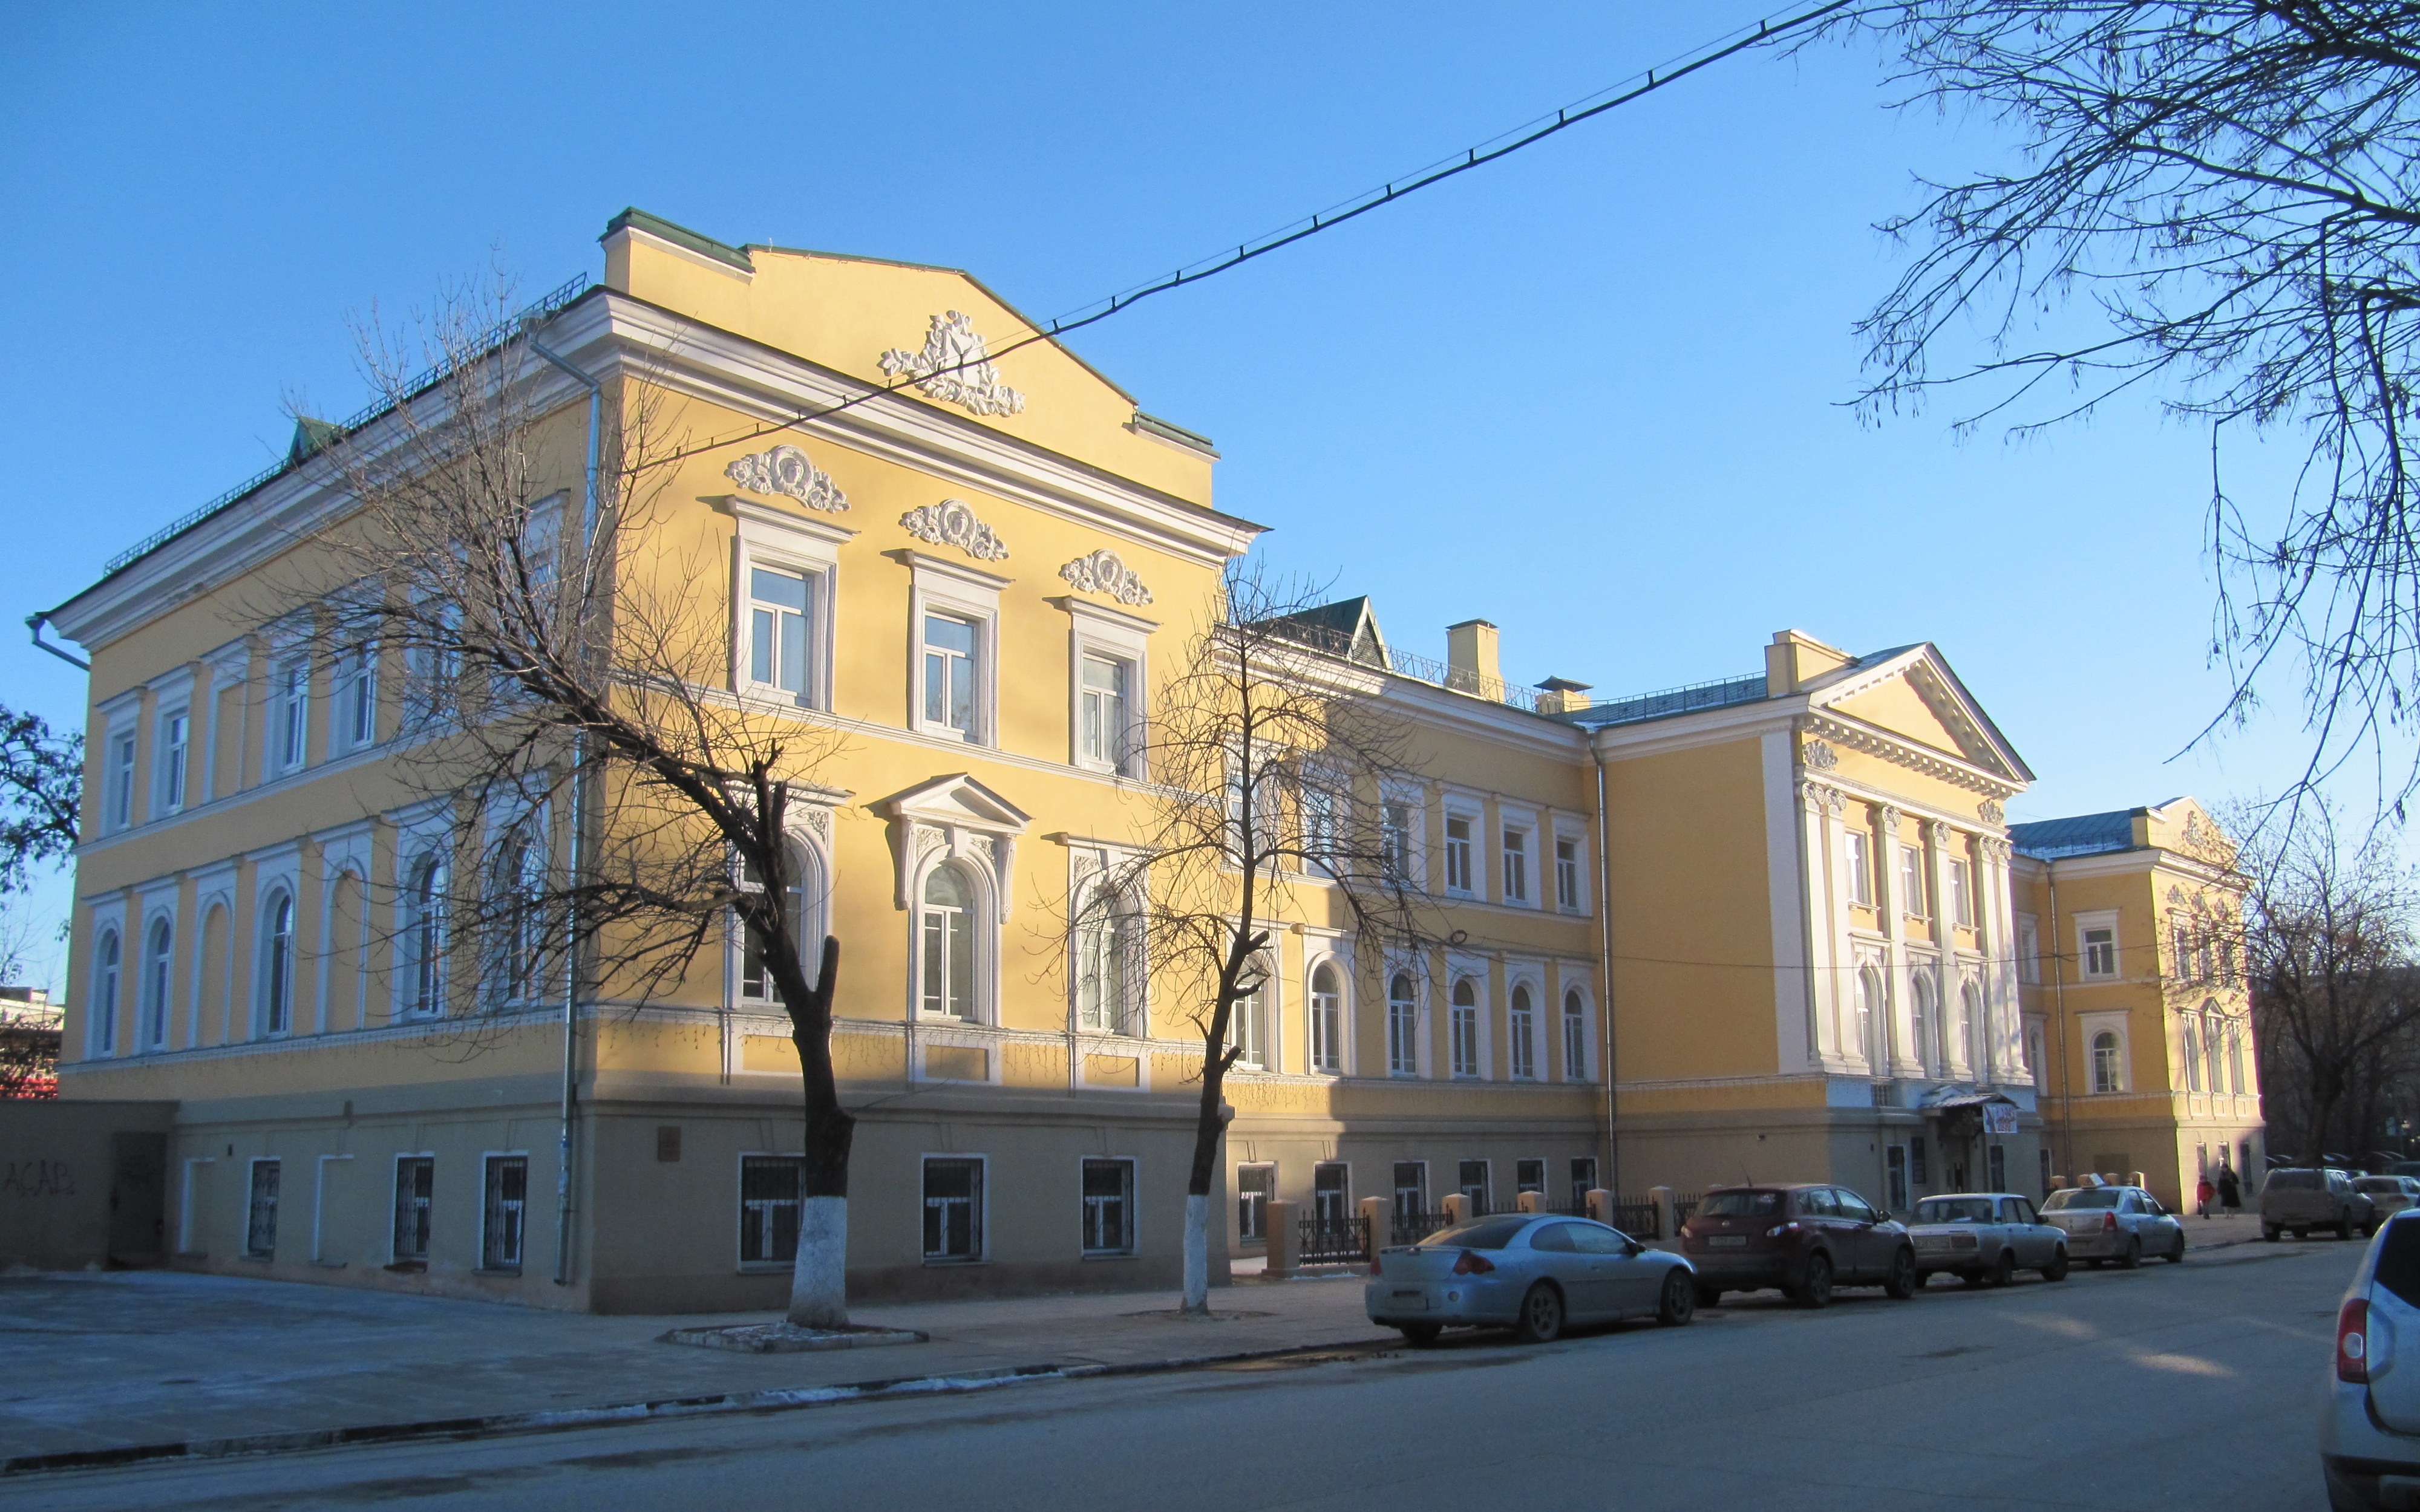 Сайт саратовского областного колледжа